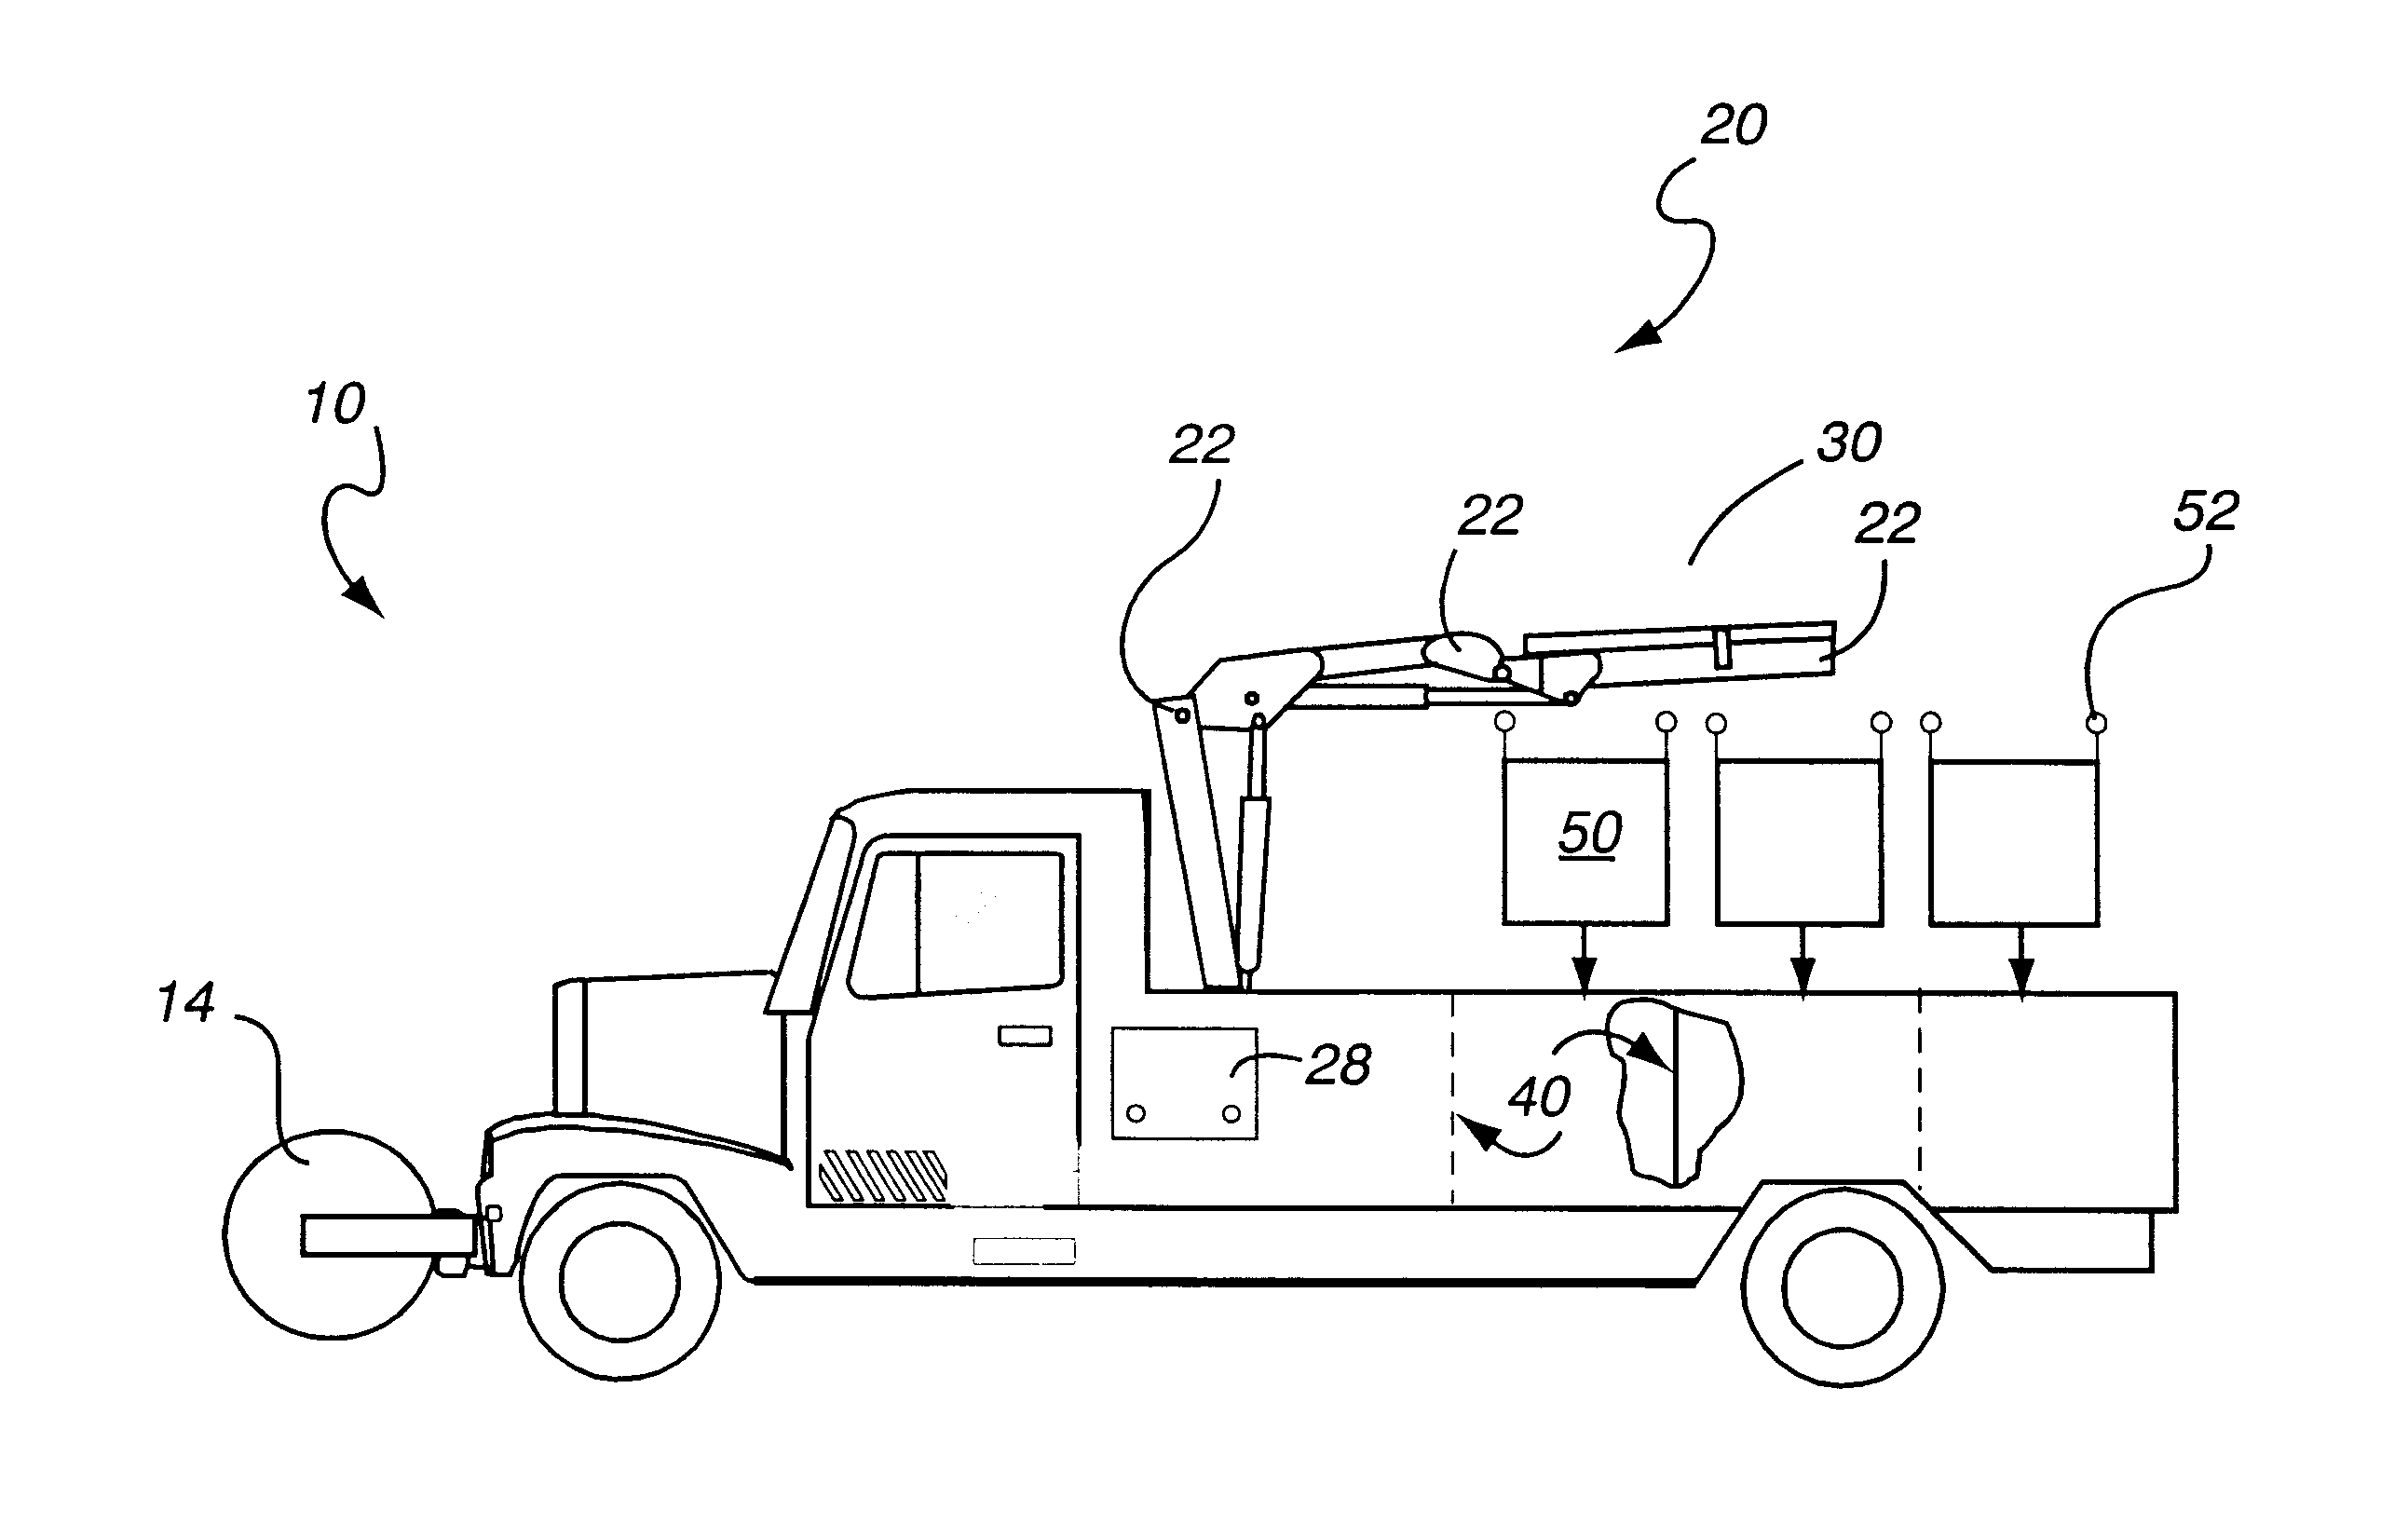 Multi-task truck